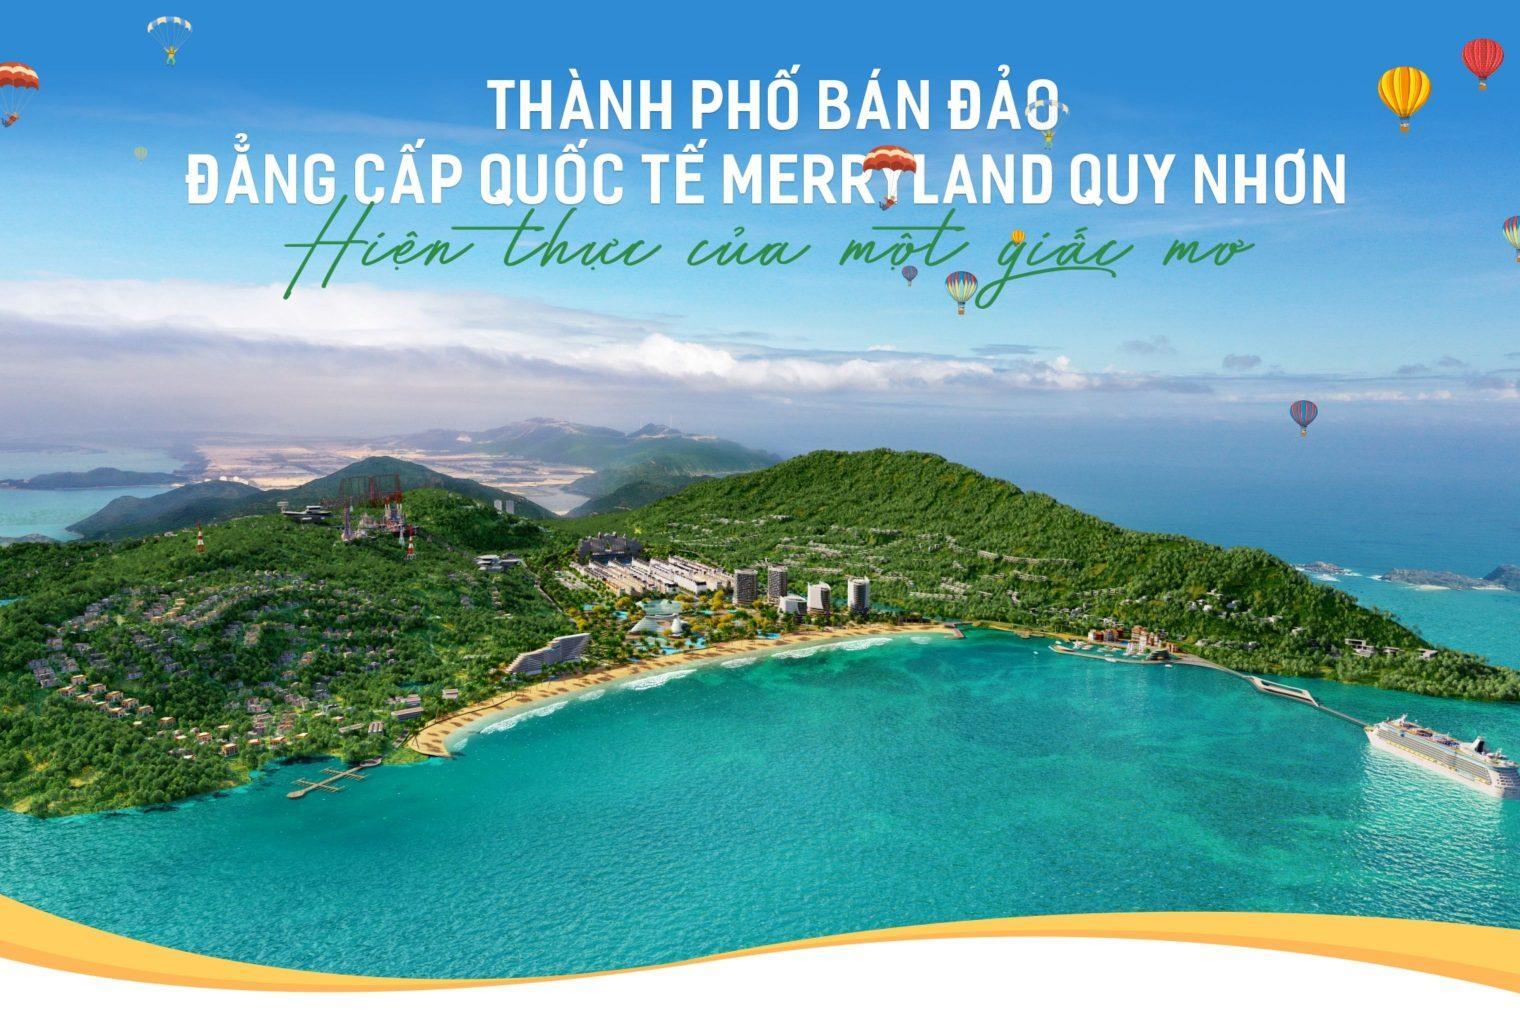 Hải Giang MerryLand Quy Nhơn – The Tropical Wonder